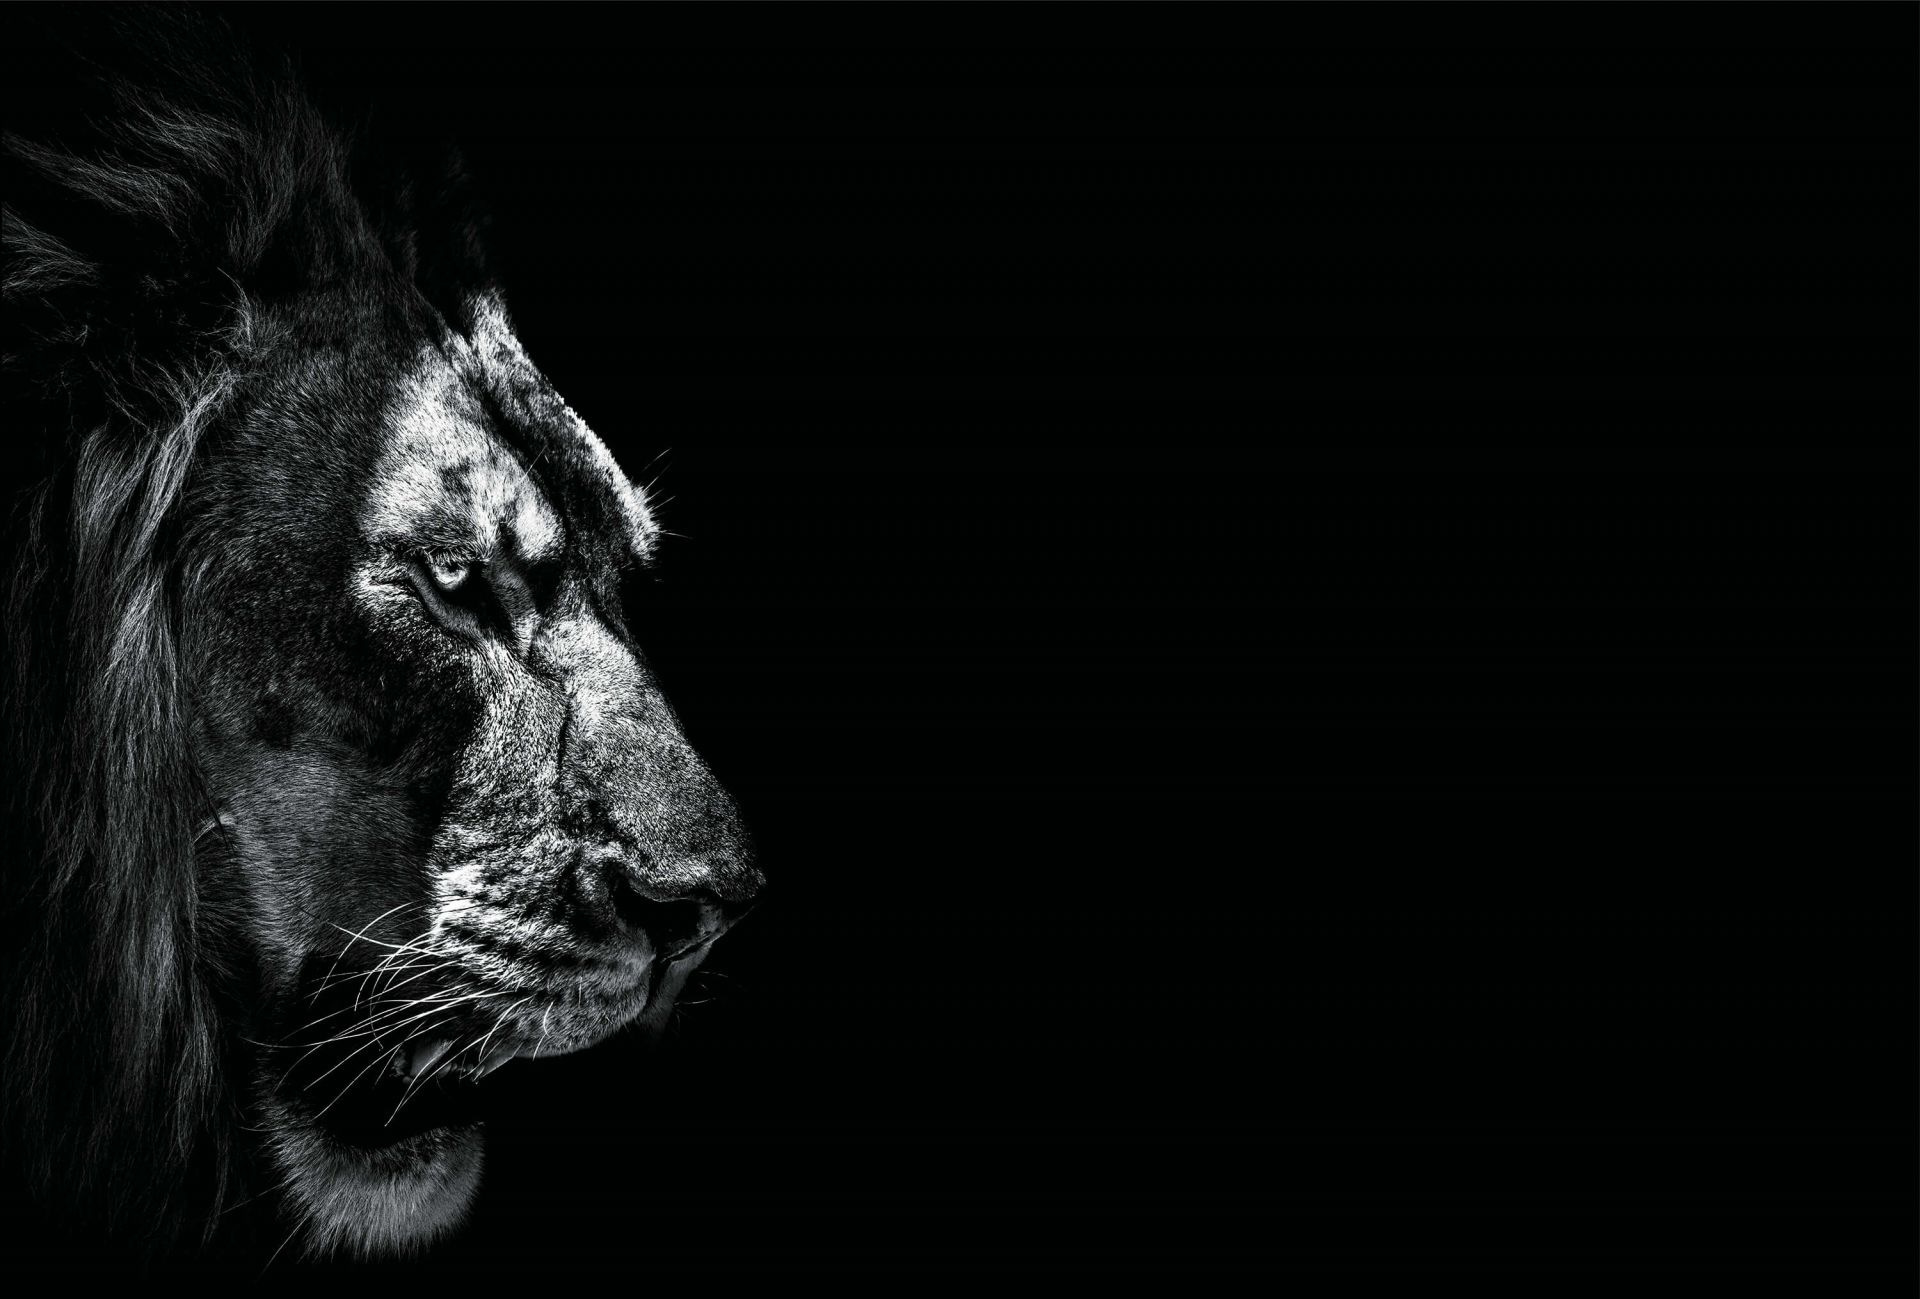 Dark Lion - Wallpaper